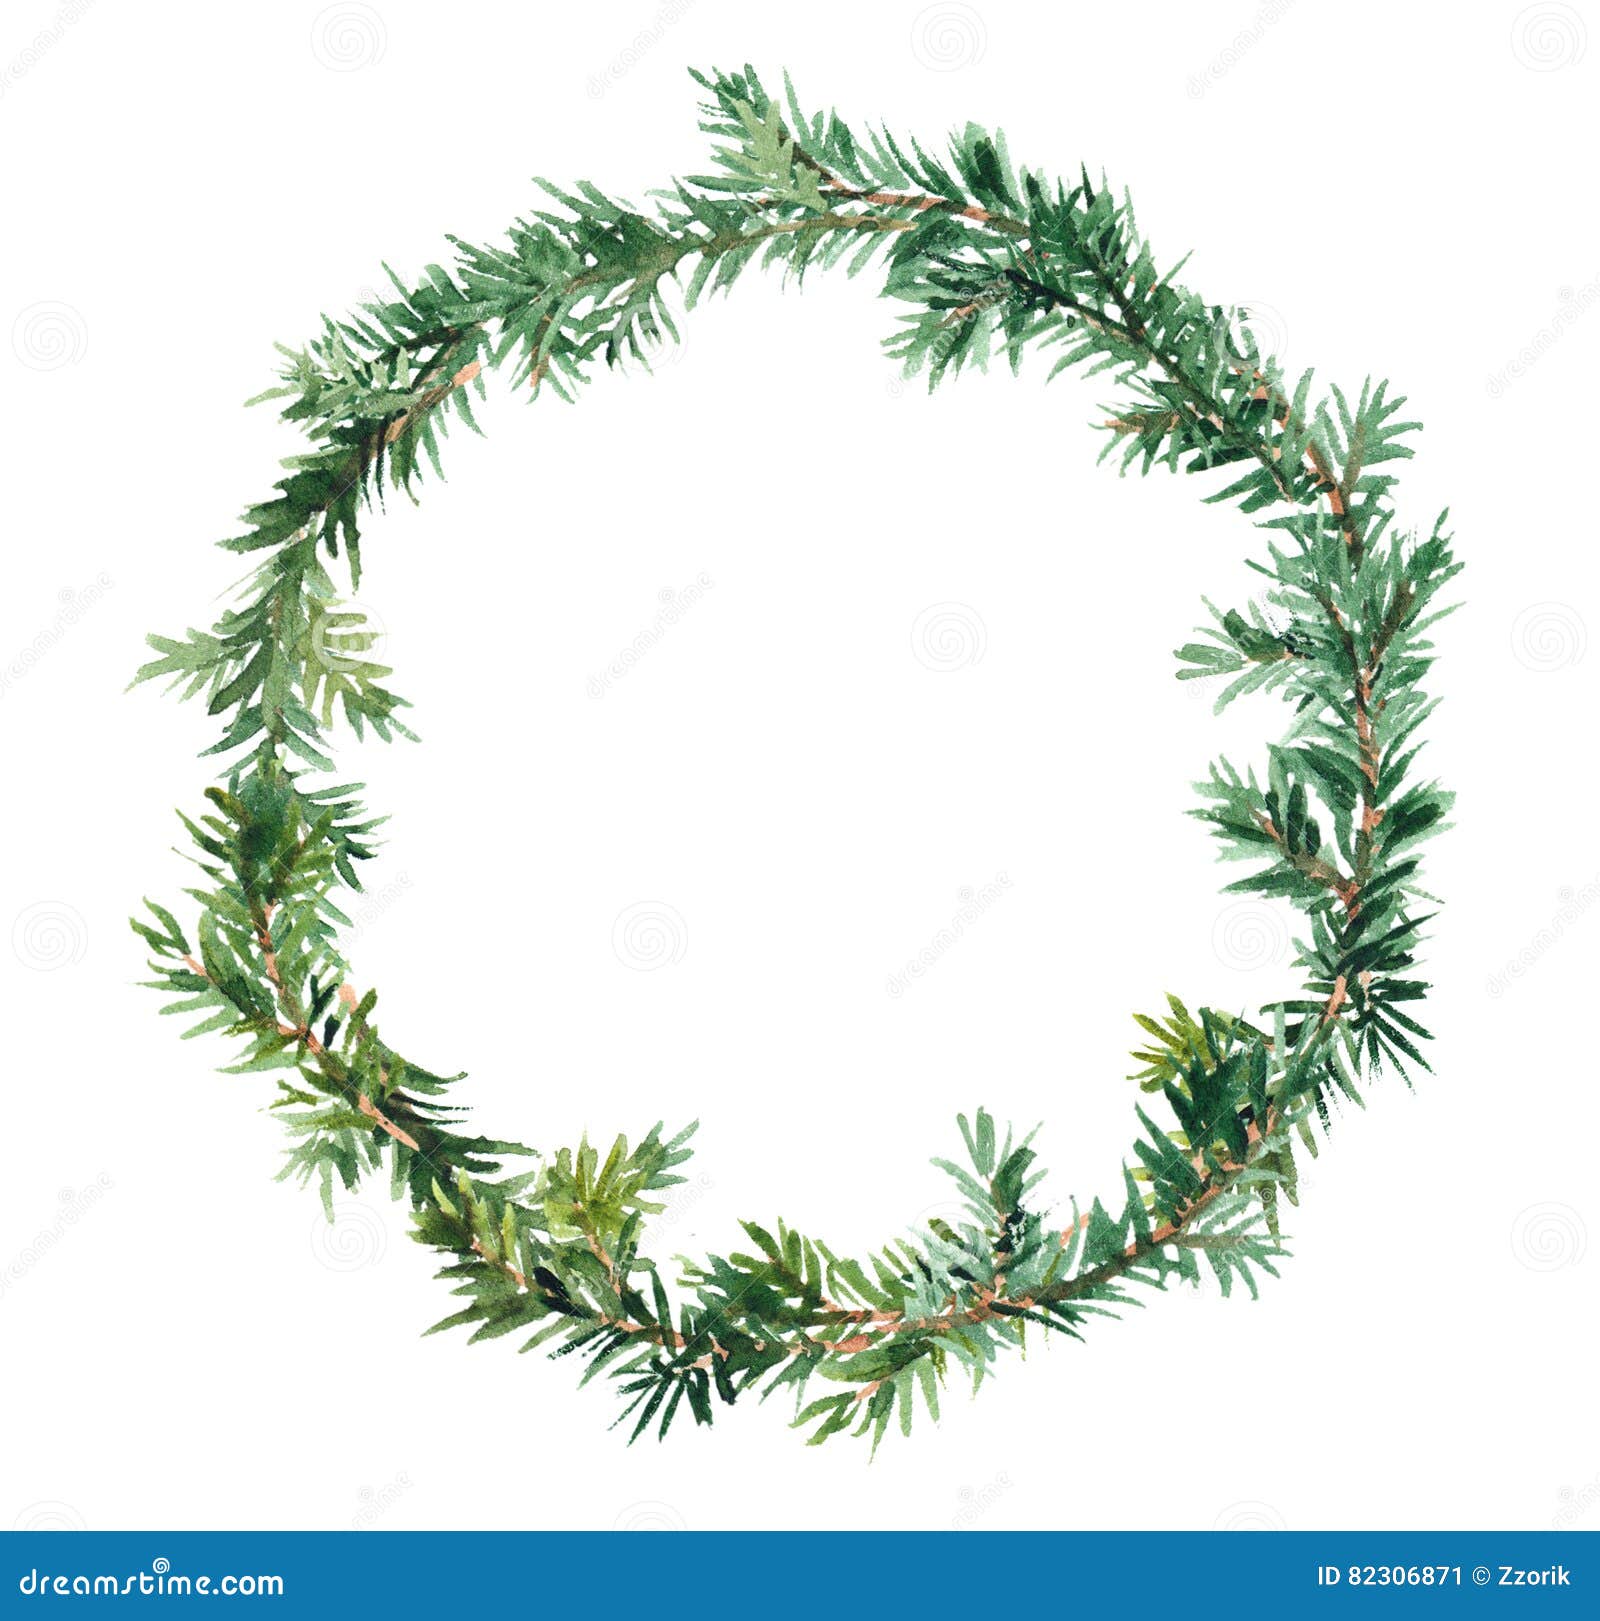 spruce wreath - fir tree. watercolor